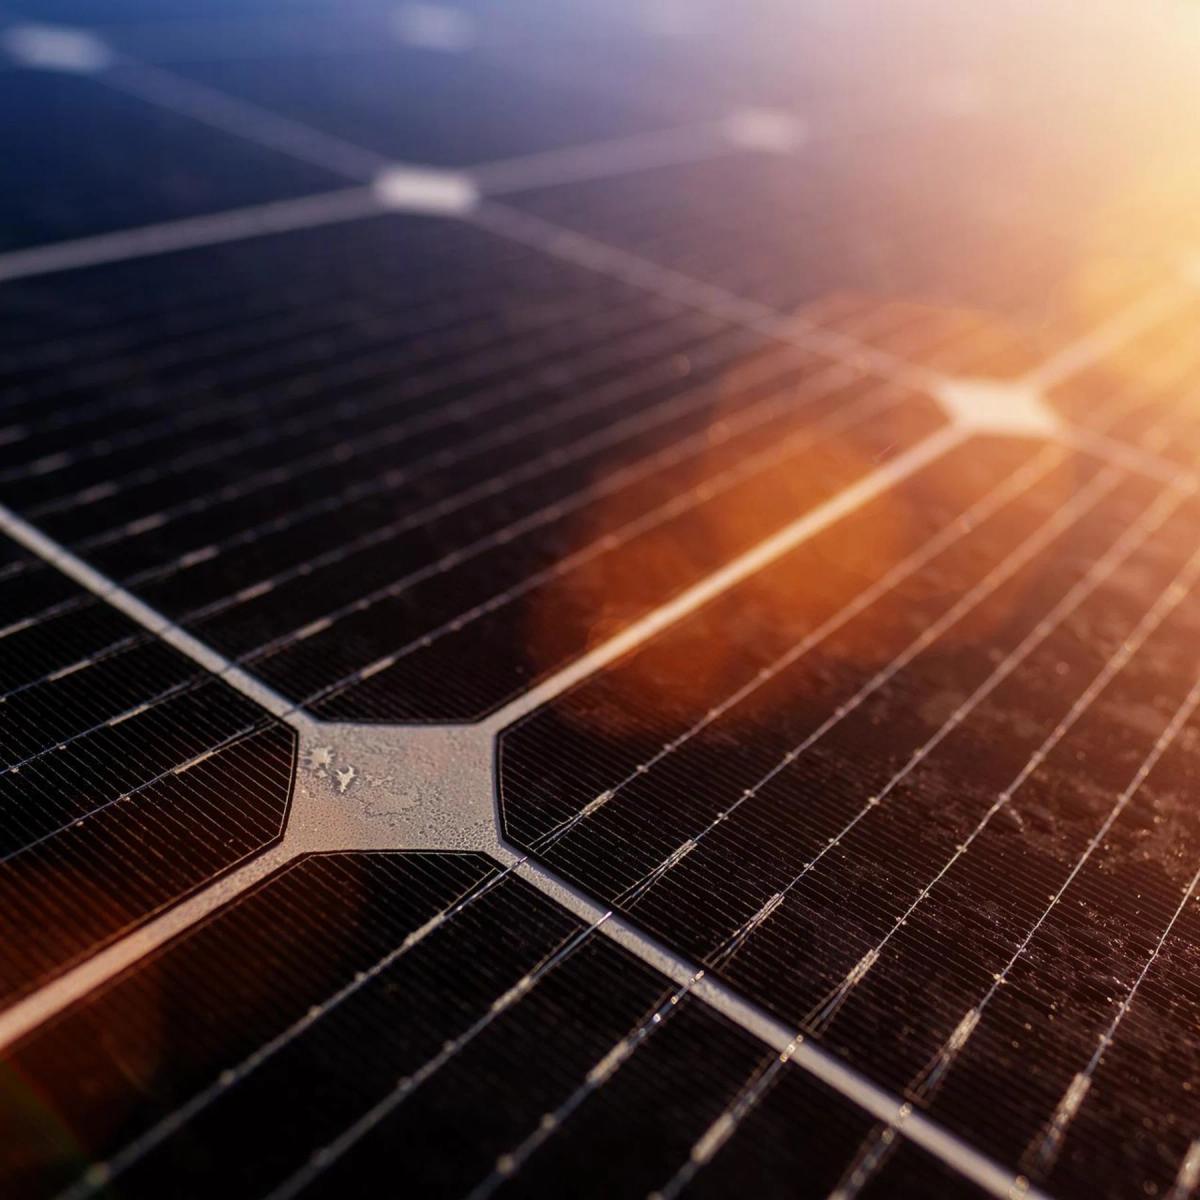 Pourquoi les panneaux solaires tardent à « fleurir » sur les toitures genevoises ? Ou pourquoi, au rythme actuel, il faudrait encore 311 ans pour atteindre le plein potentiel de production d’électricité solaire ? 